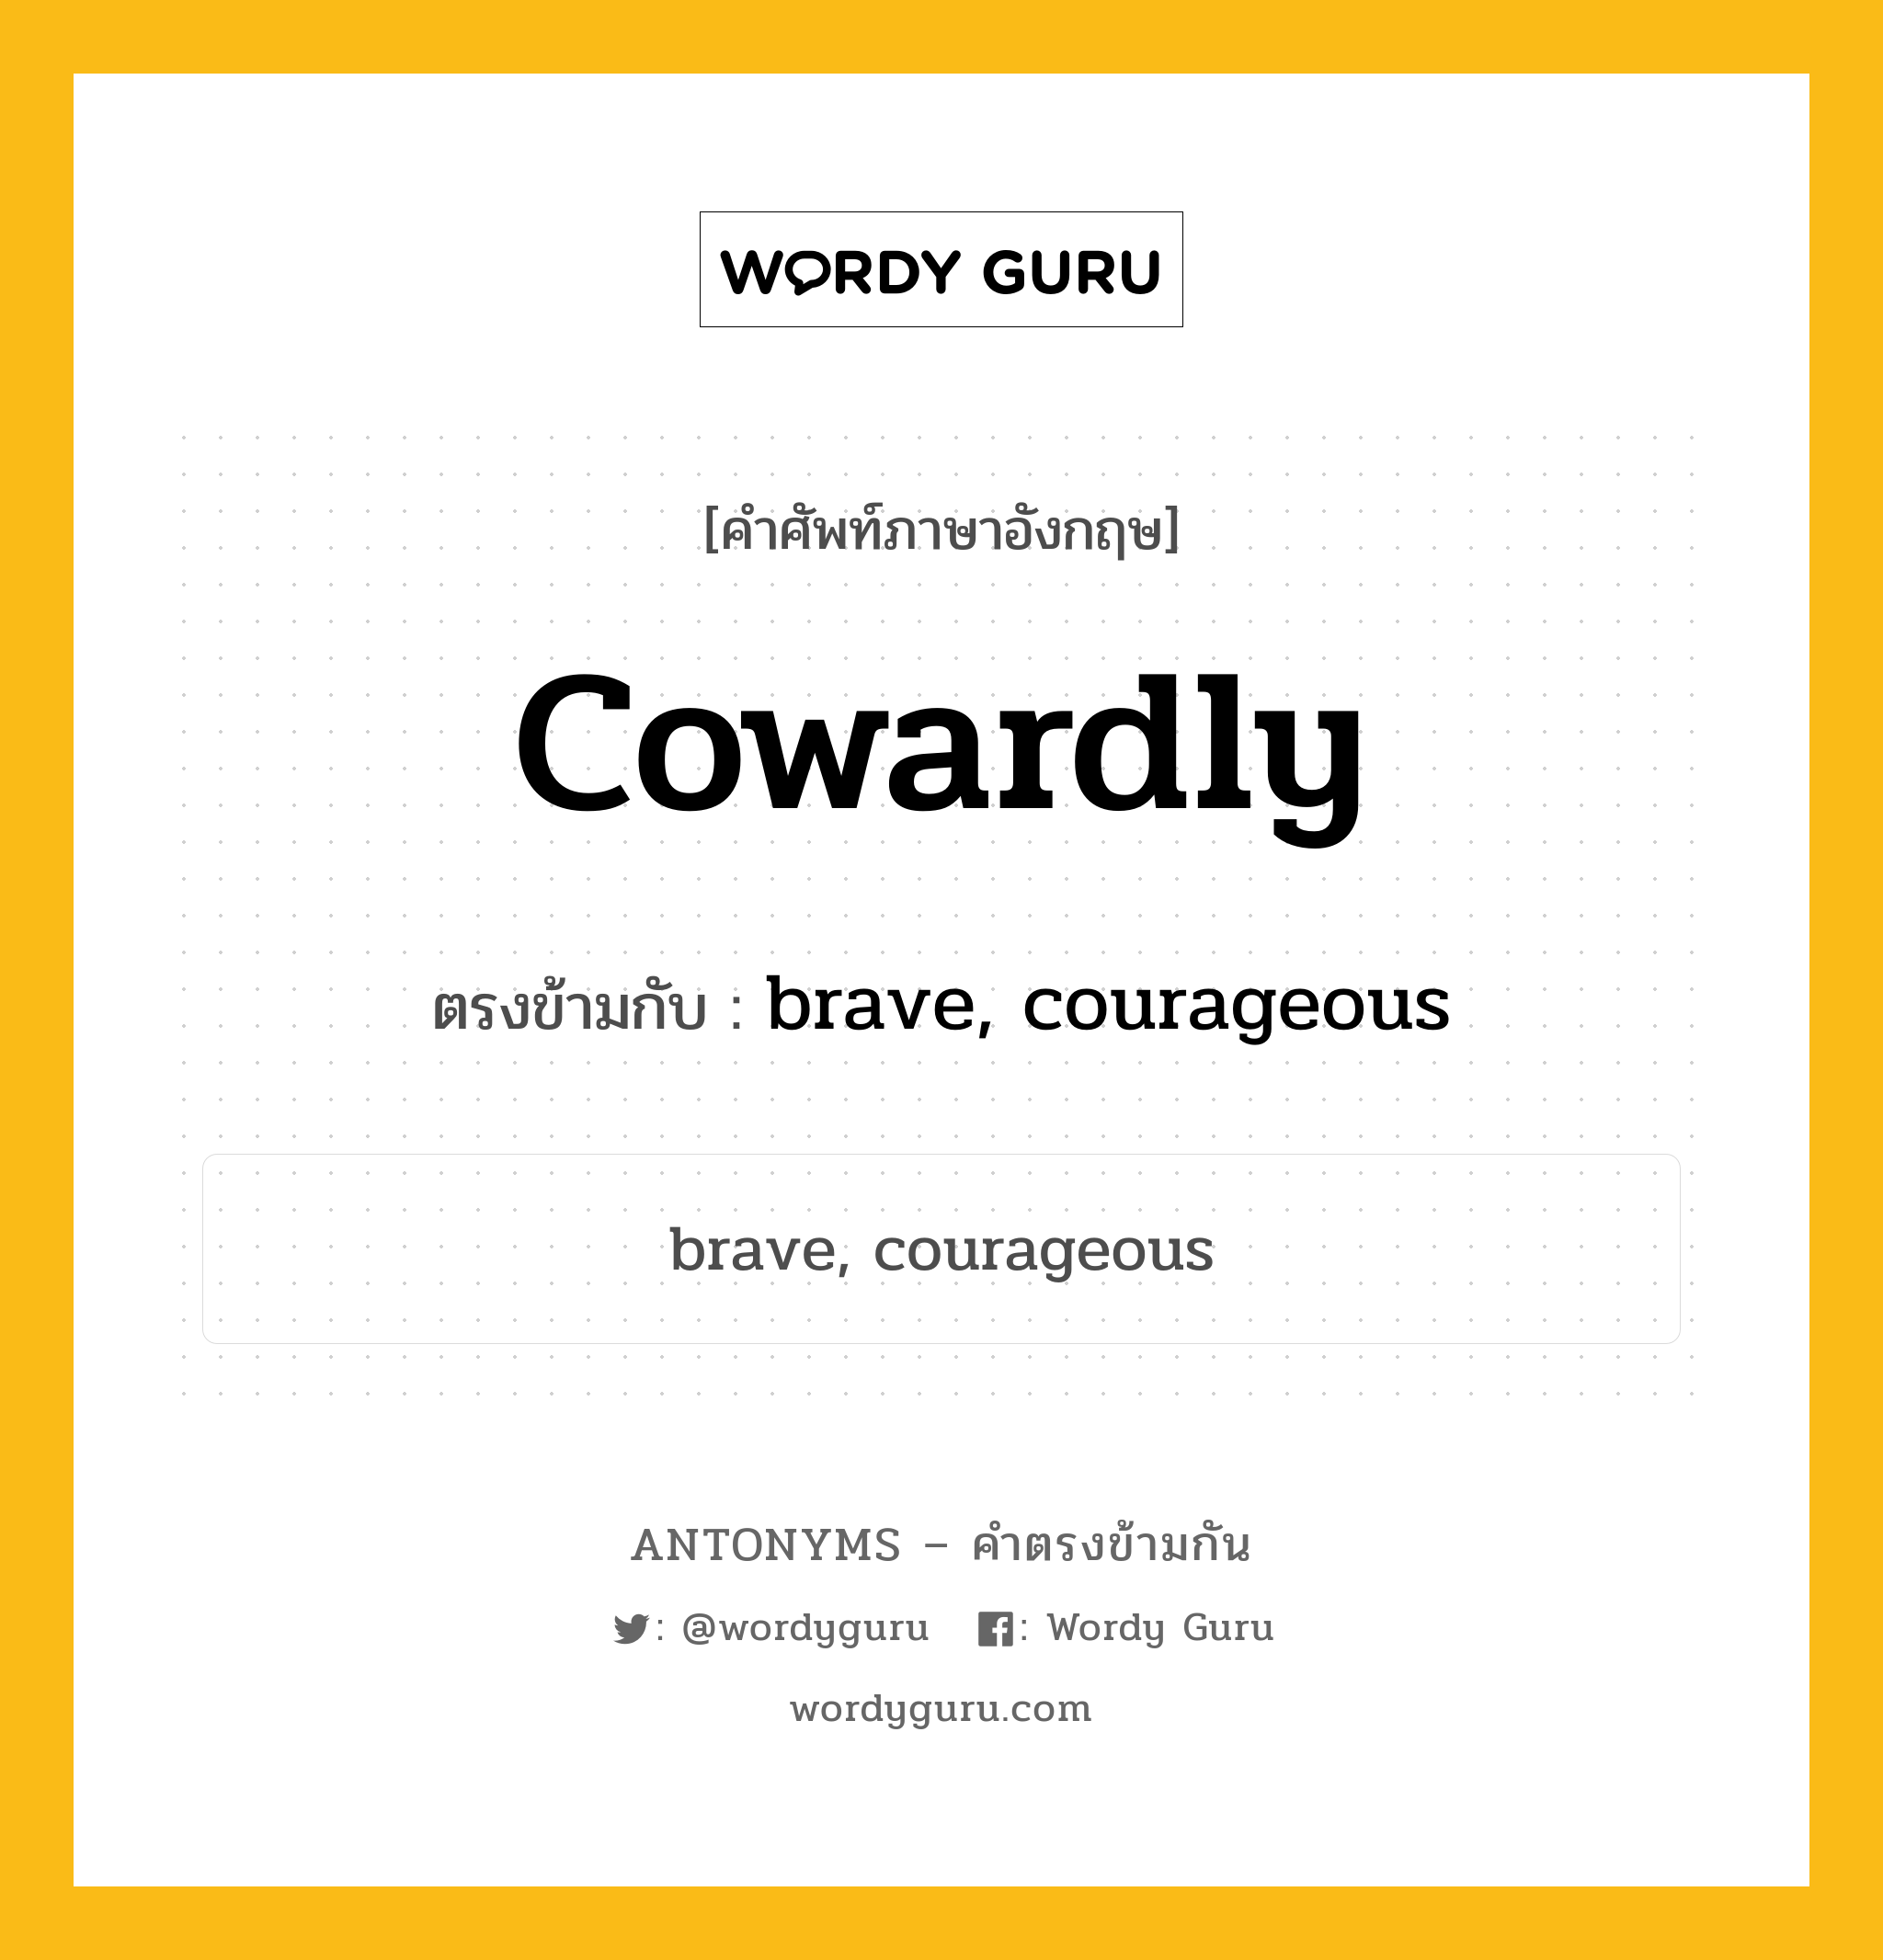 cowardly เป็นคำตรงข้ามกับคำไหนบ้าง?, คำศัพท์ภาษาอังกฤษ cowardly ตรงข้ามกับ brave, courageous หมวด brave, courageous